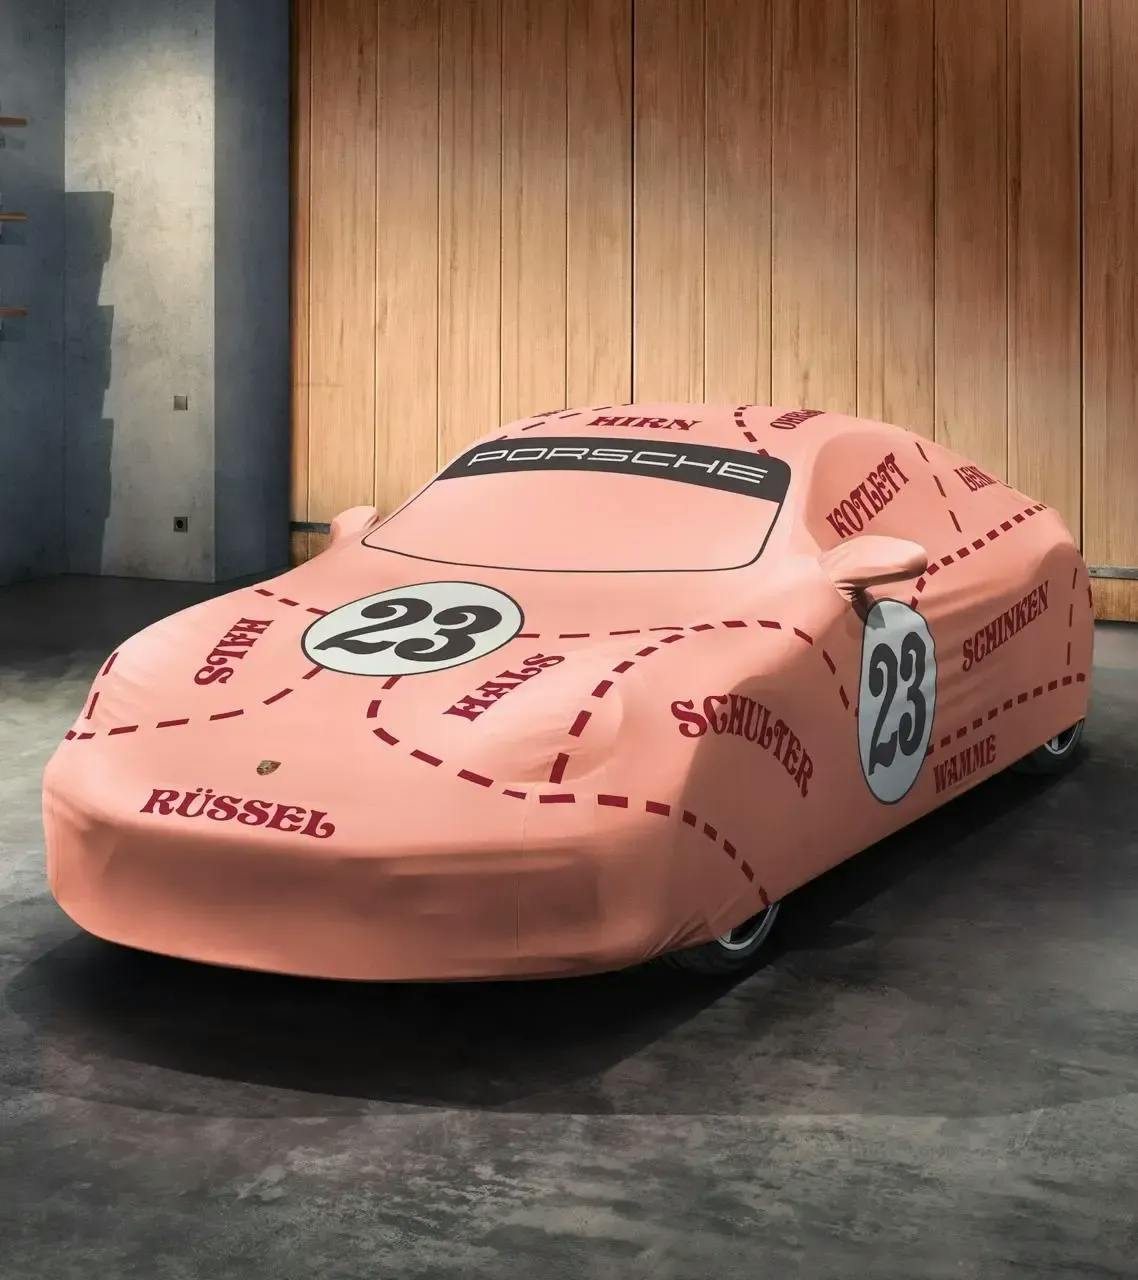 Indoor car cover "Pink Pig" design - 911 (992 Carrera) 1